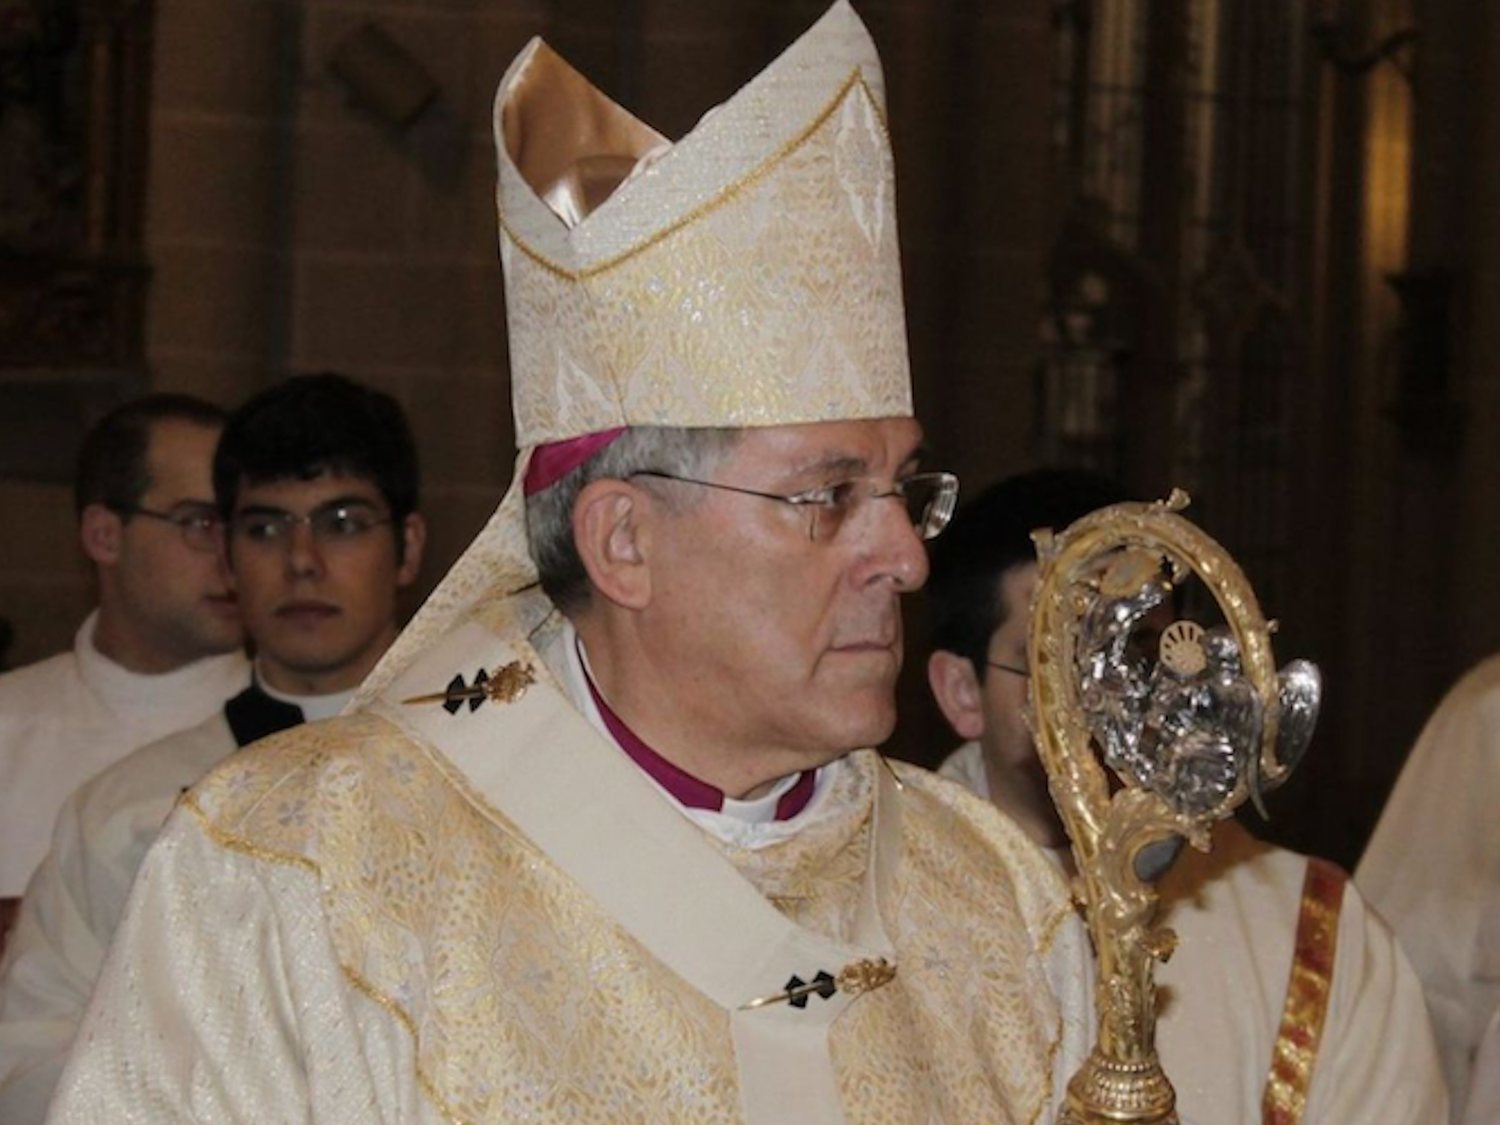 El arzobispo de Toledo: "No creo en la igualdad de género"